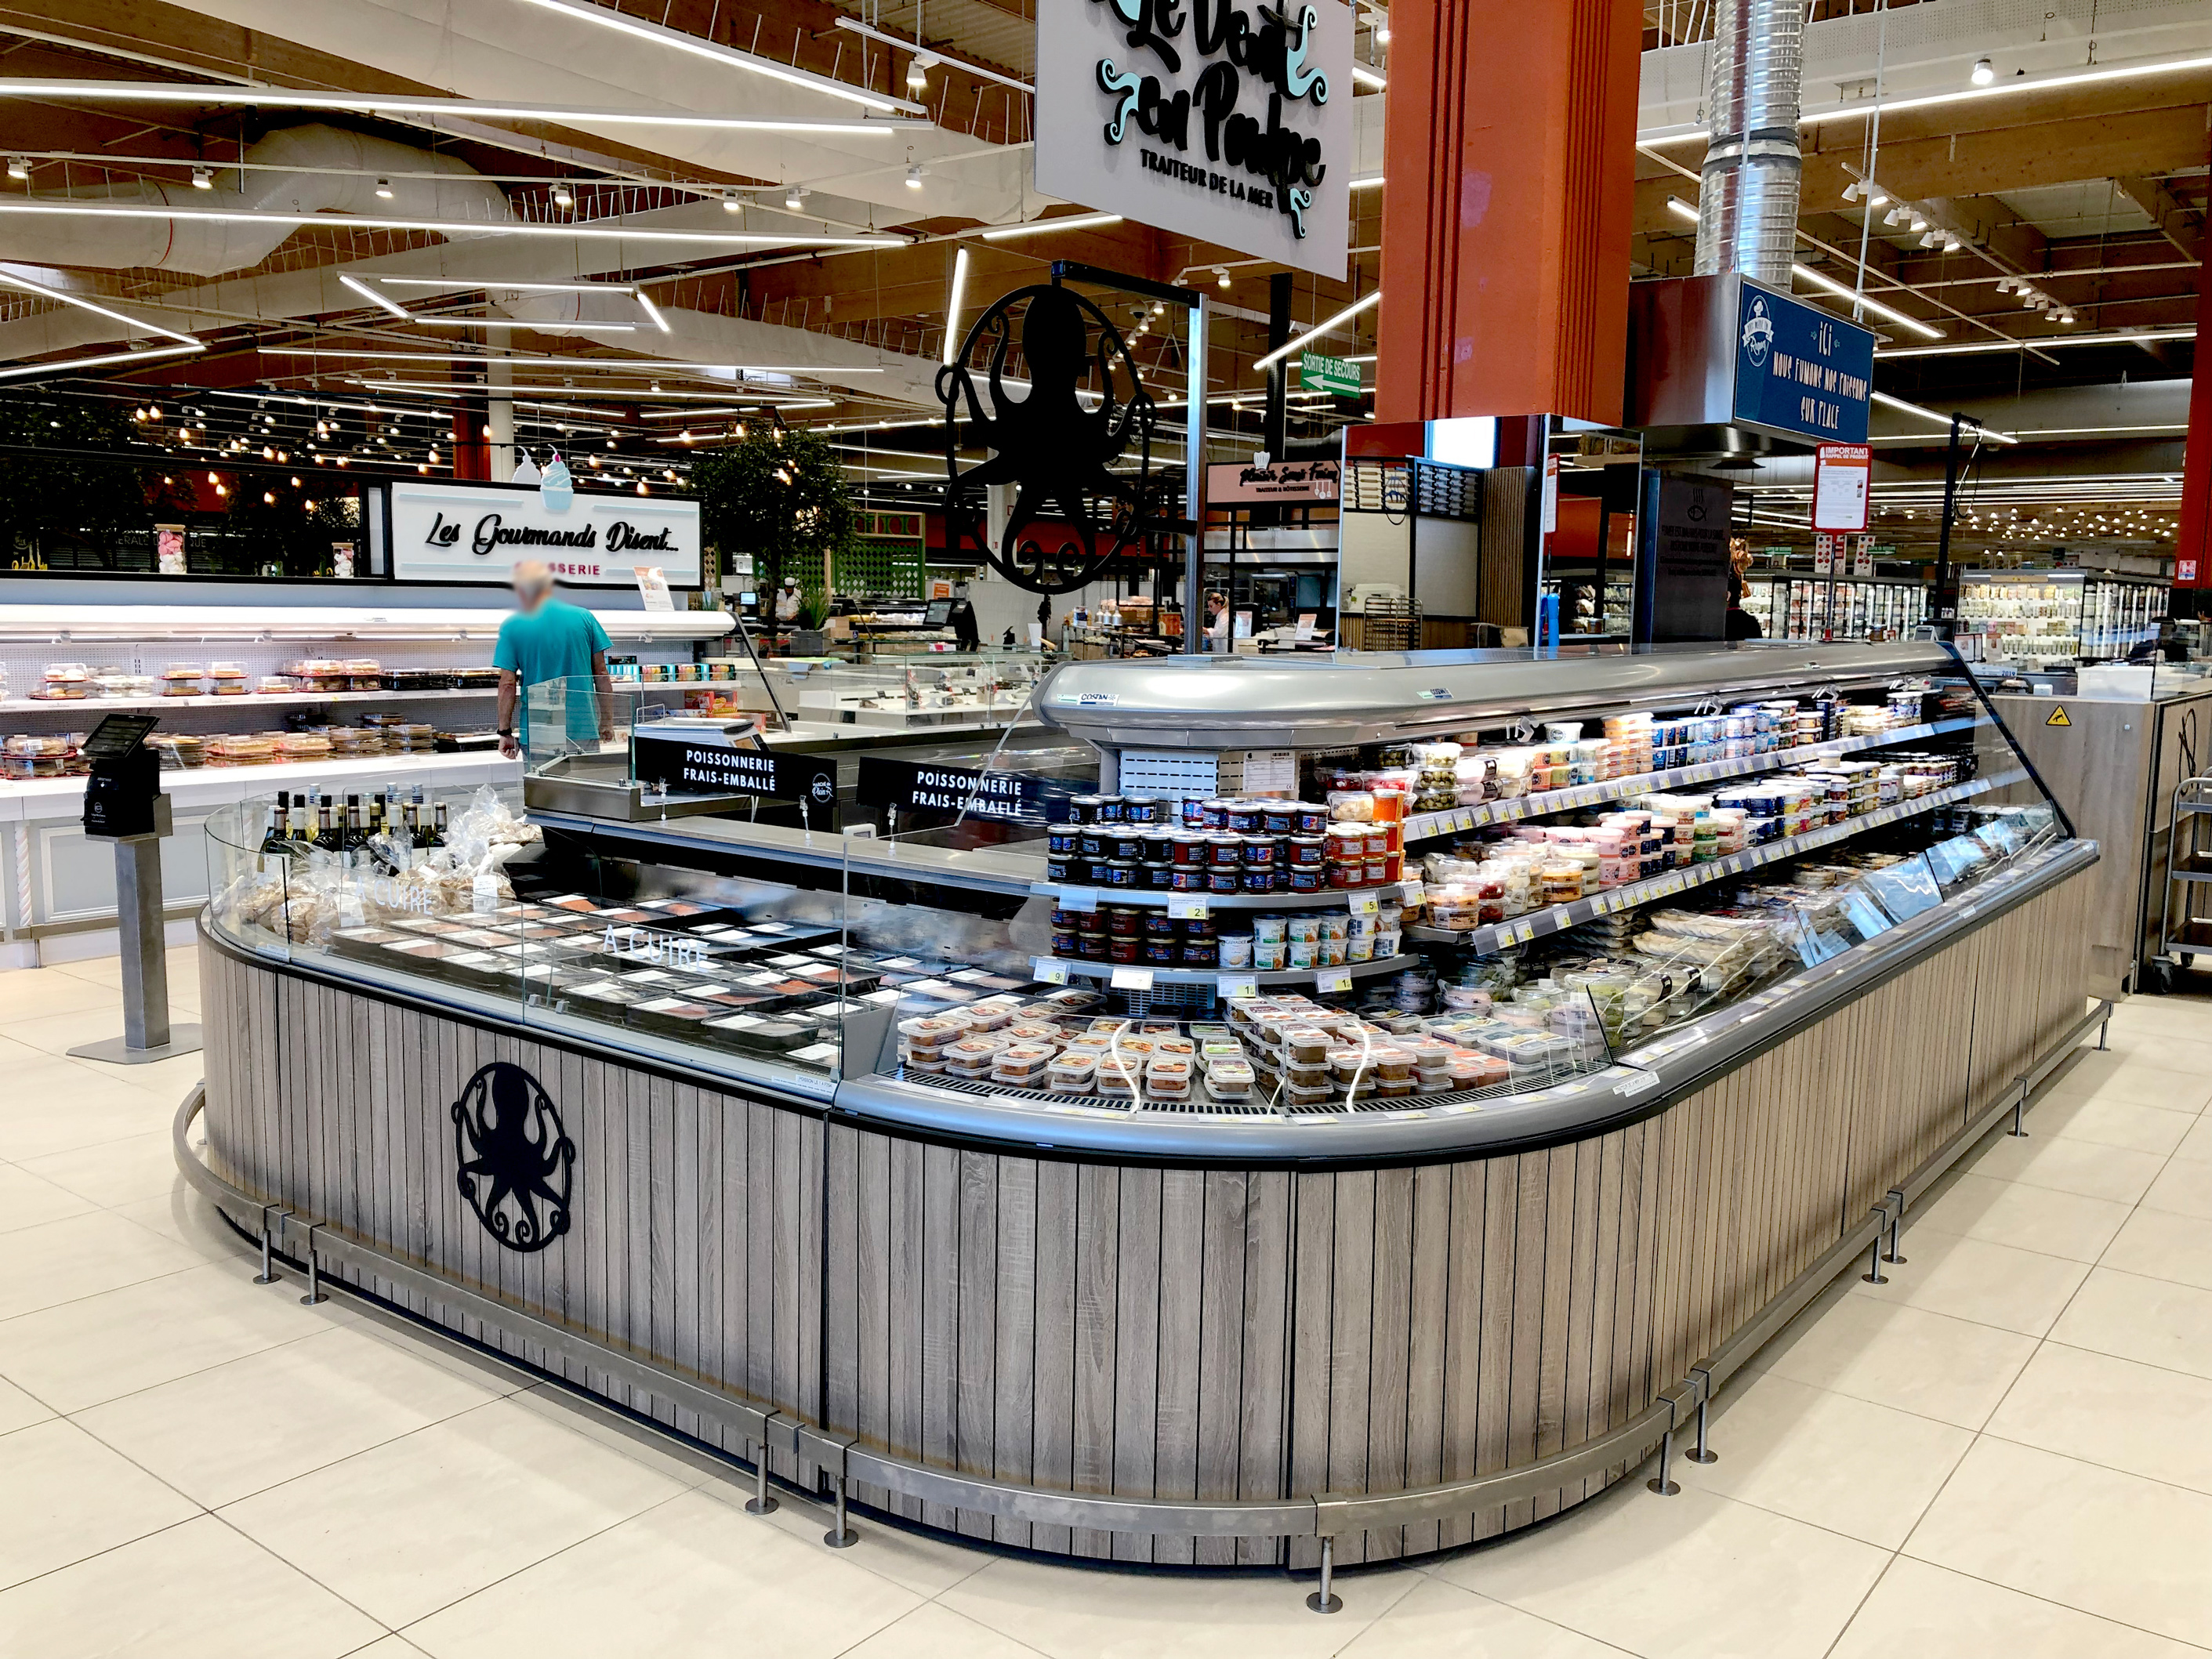 L Catterton acquires St. Marche Supermercado - 2016-09-30